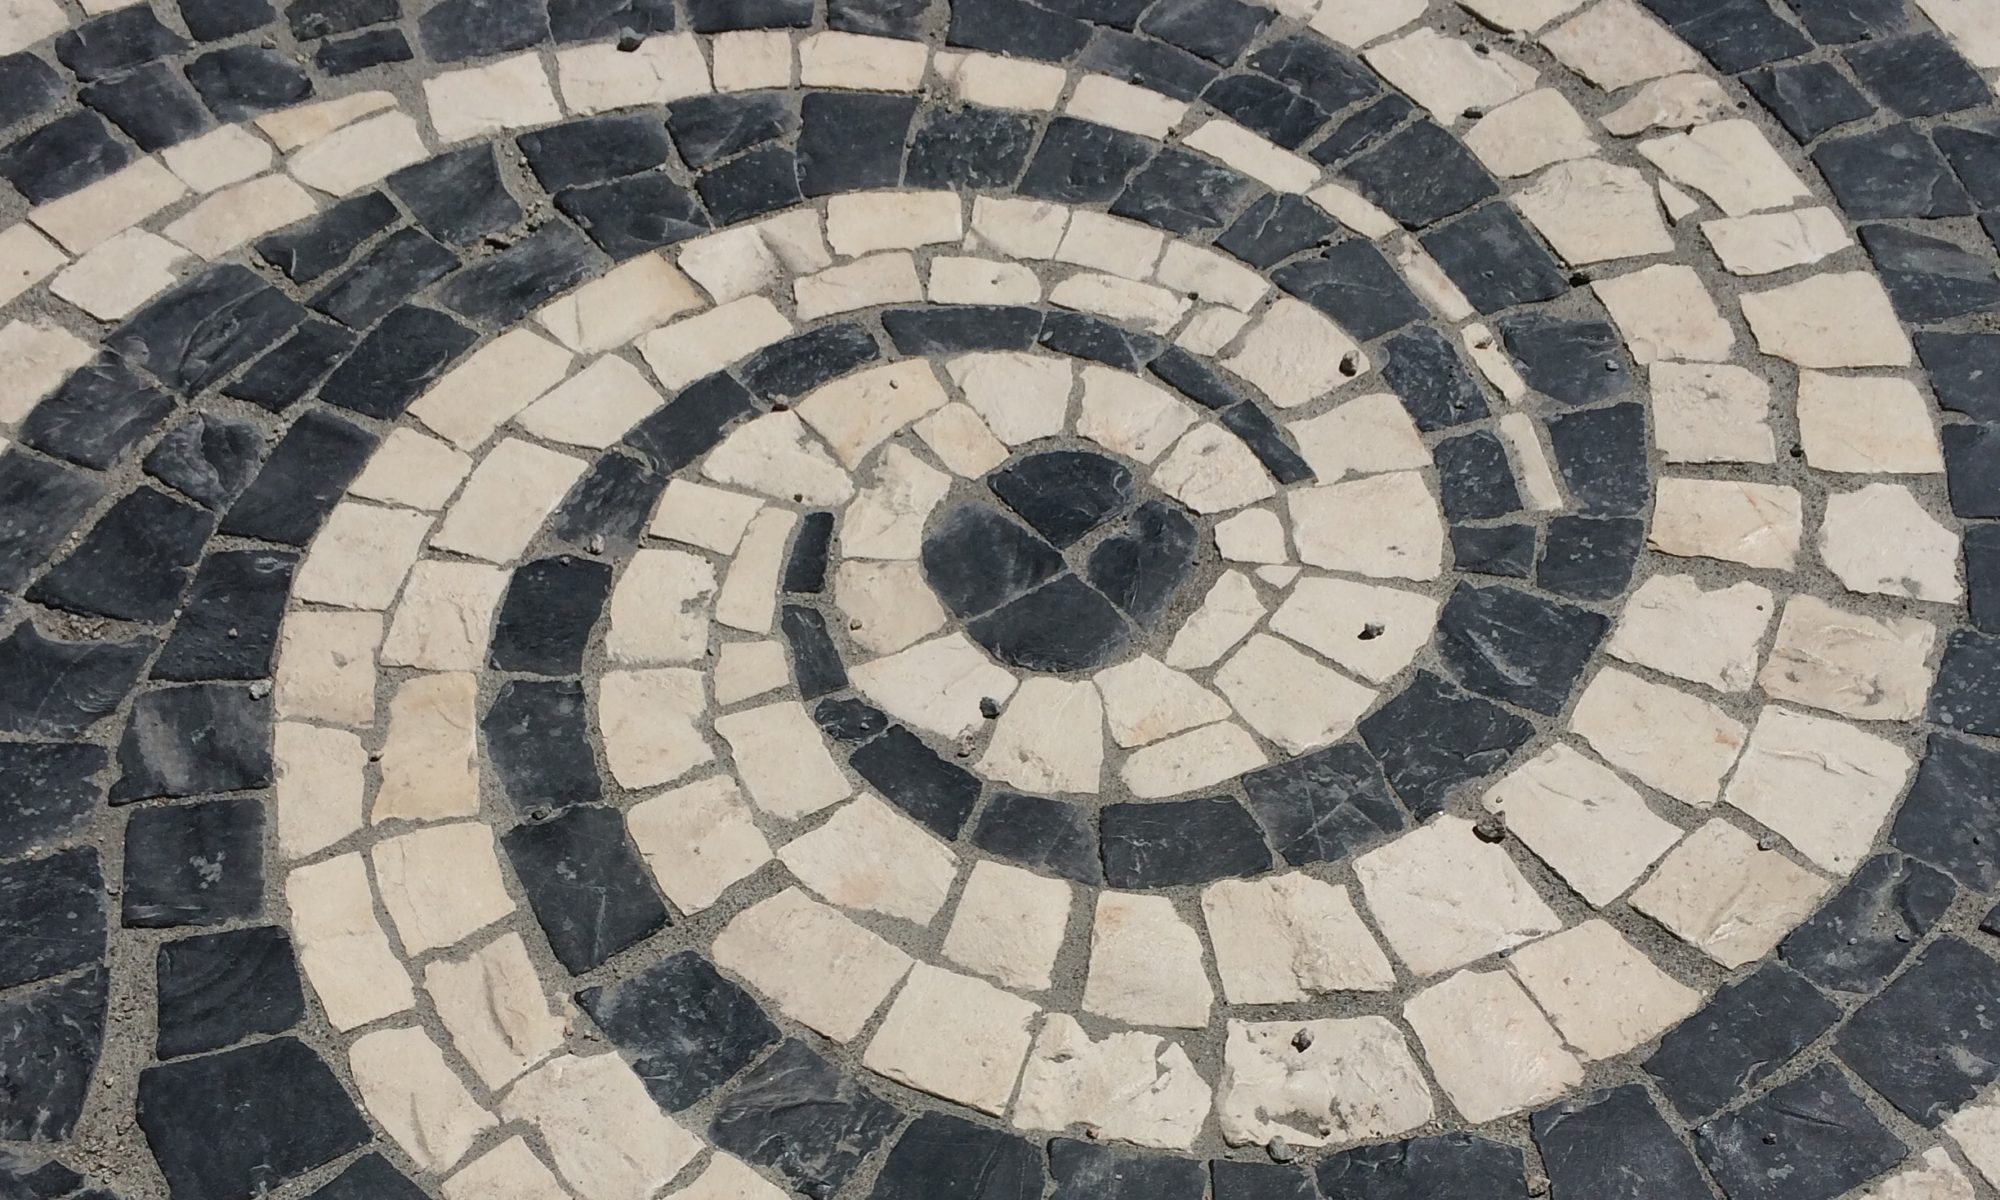 Portuguese tile